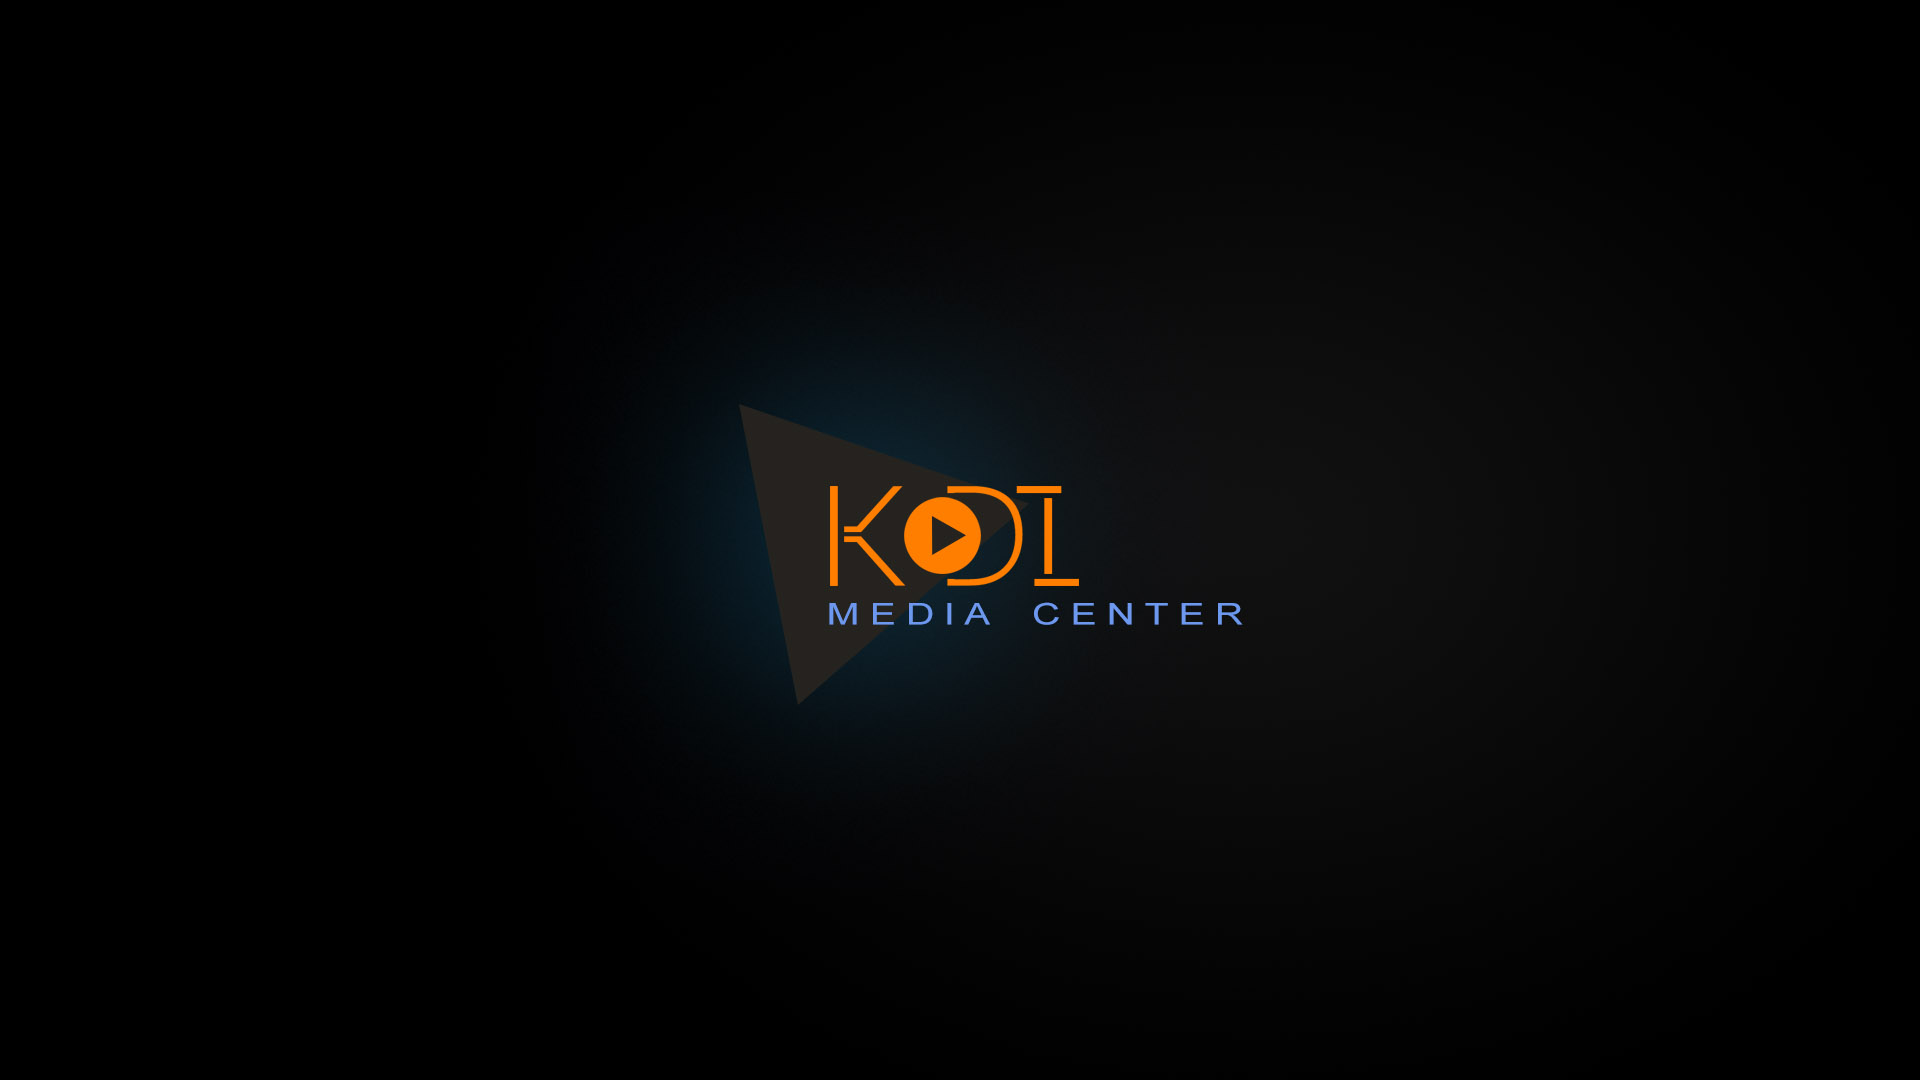 Re Kodi Logo Suggestions And Ideas Avik244